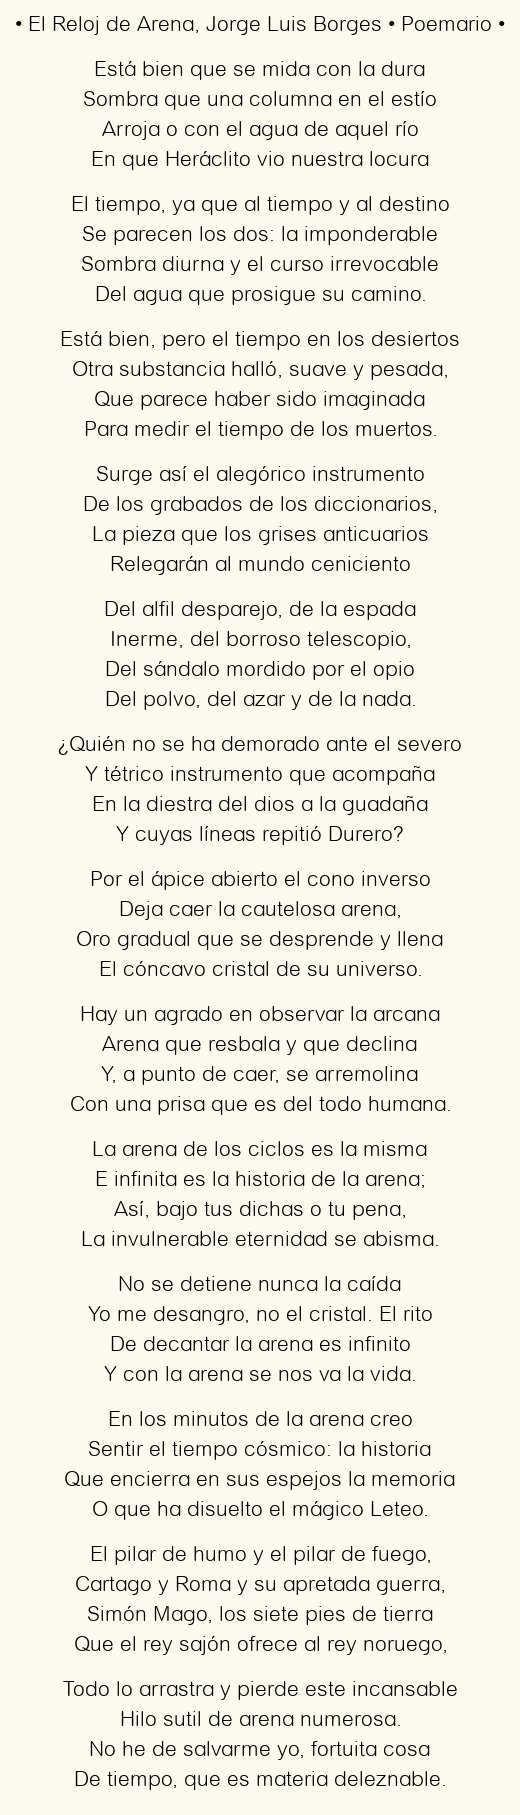 Imagen con el poema El Reloj de Arena, por Jorge Luis Borges